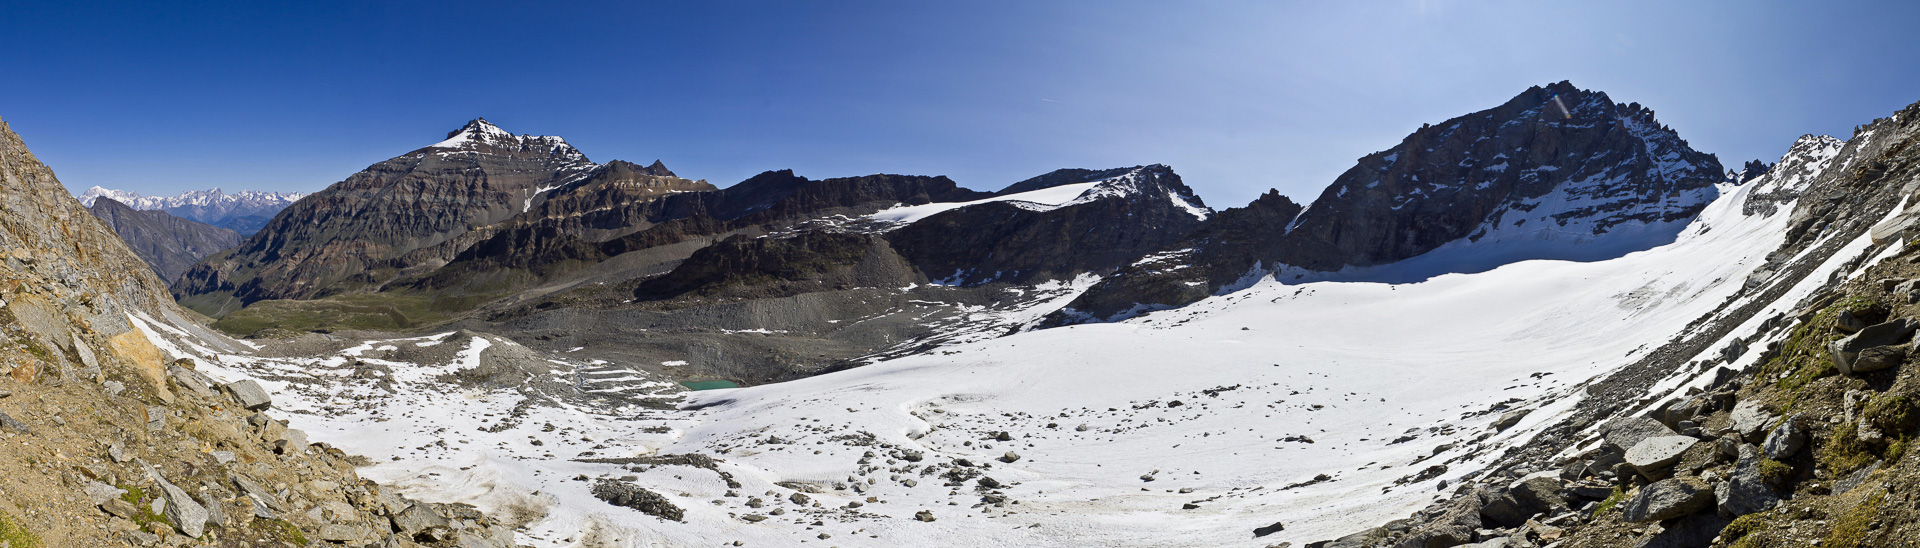 Mont Blanc, Punta Bianca, Gran Serra und Herbetet beherrschen die Landschaft.